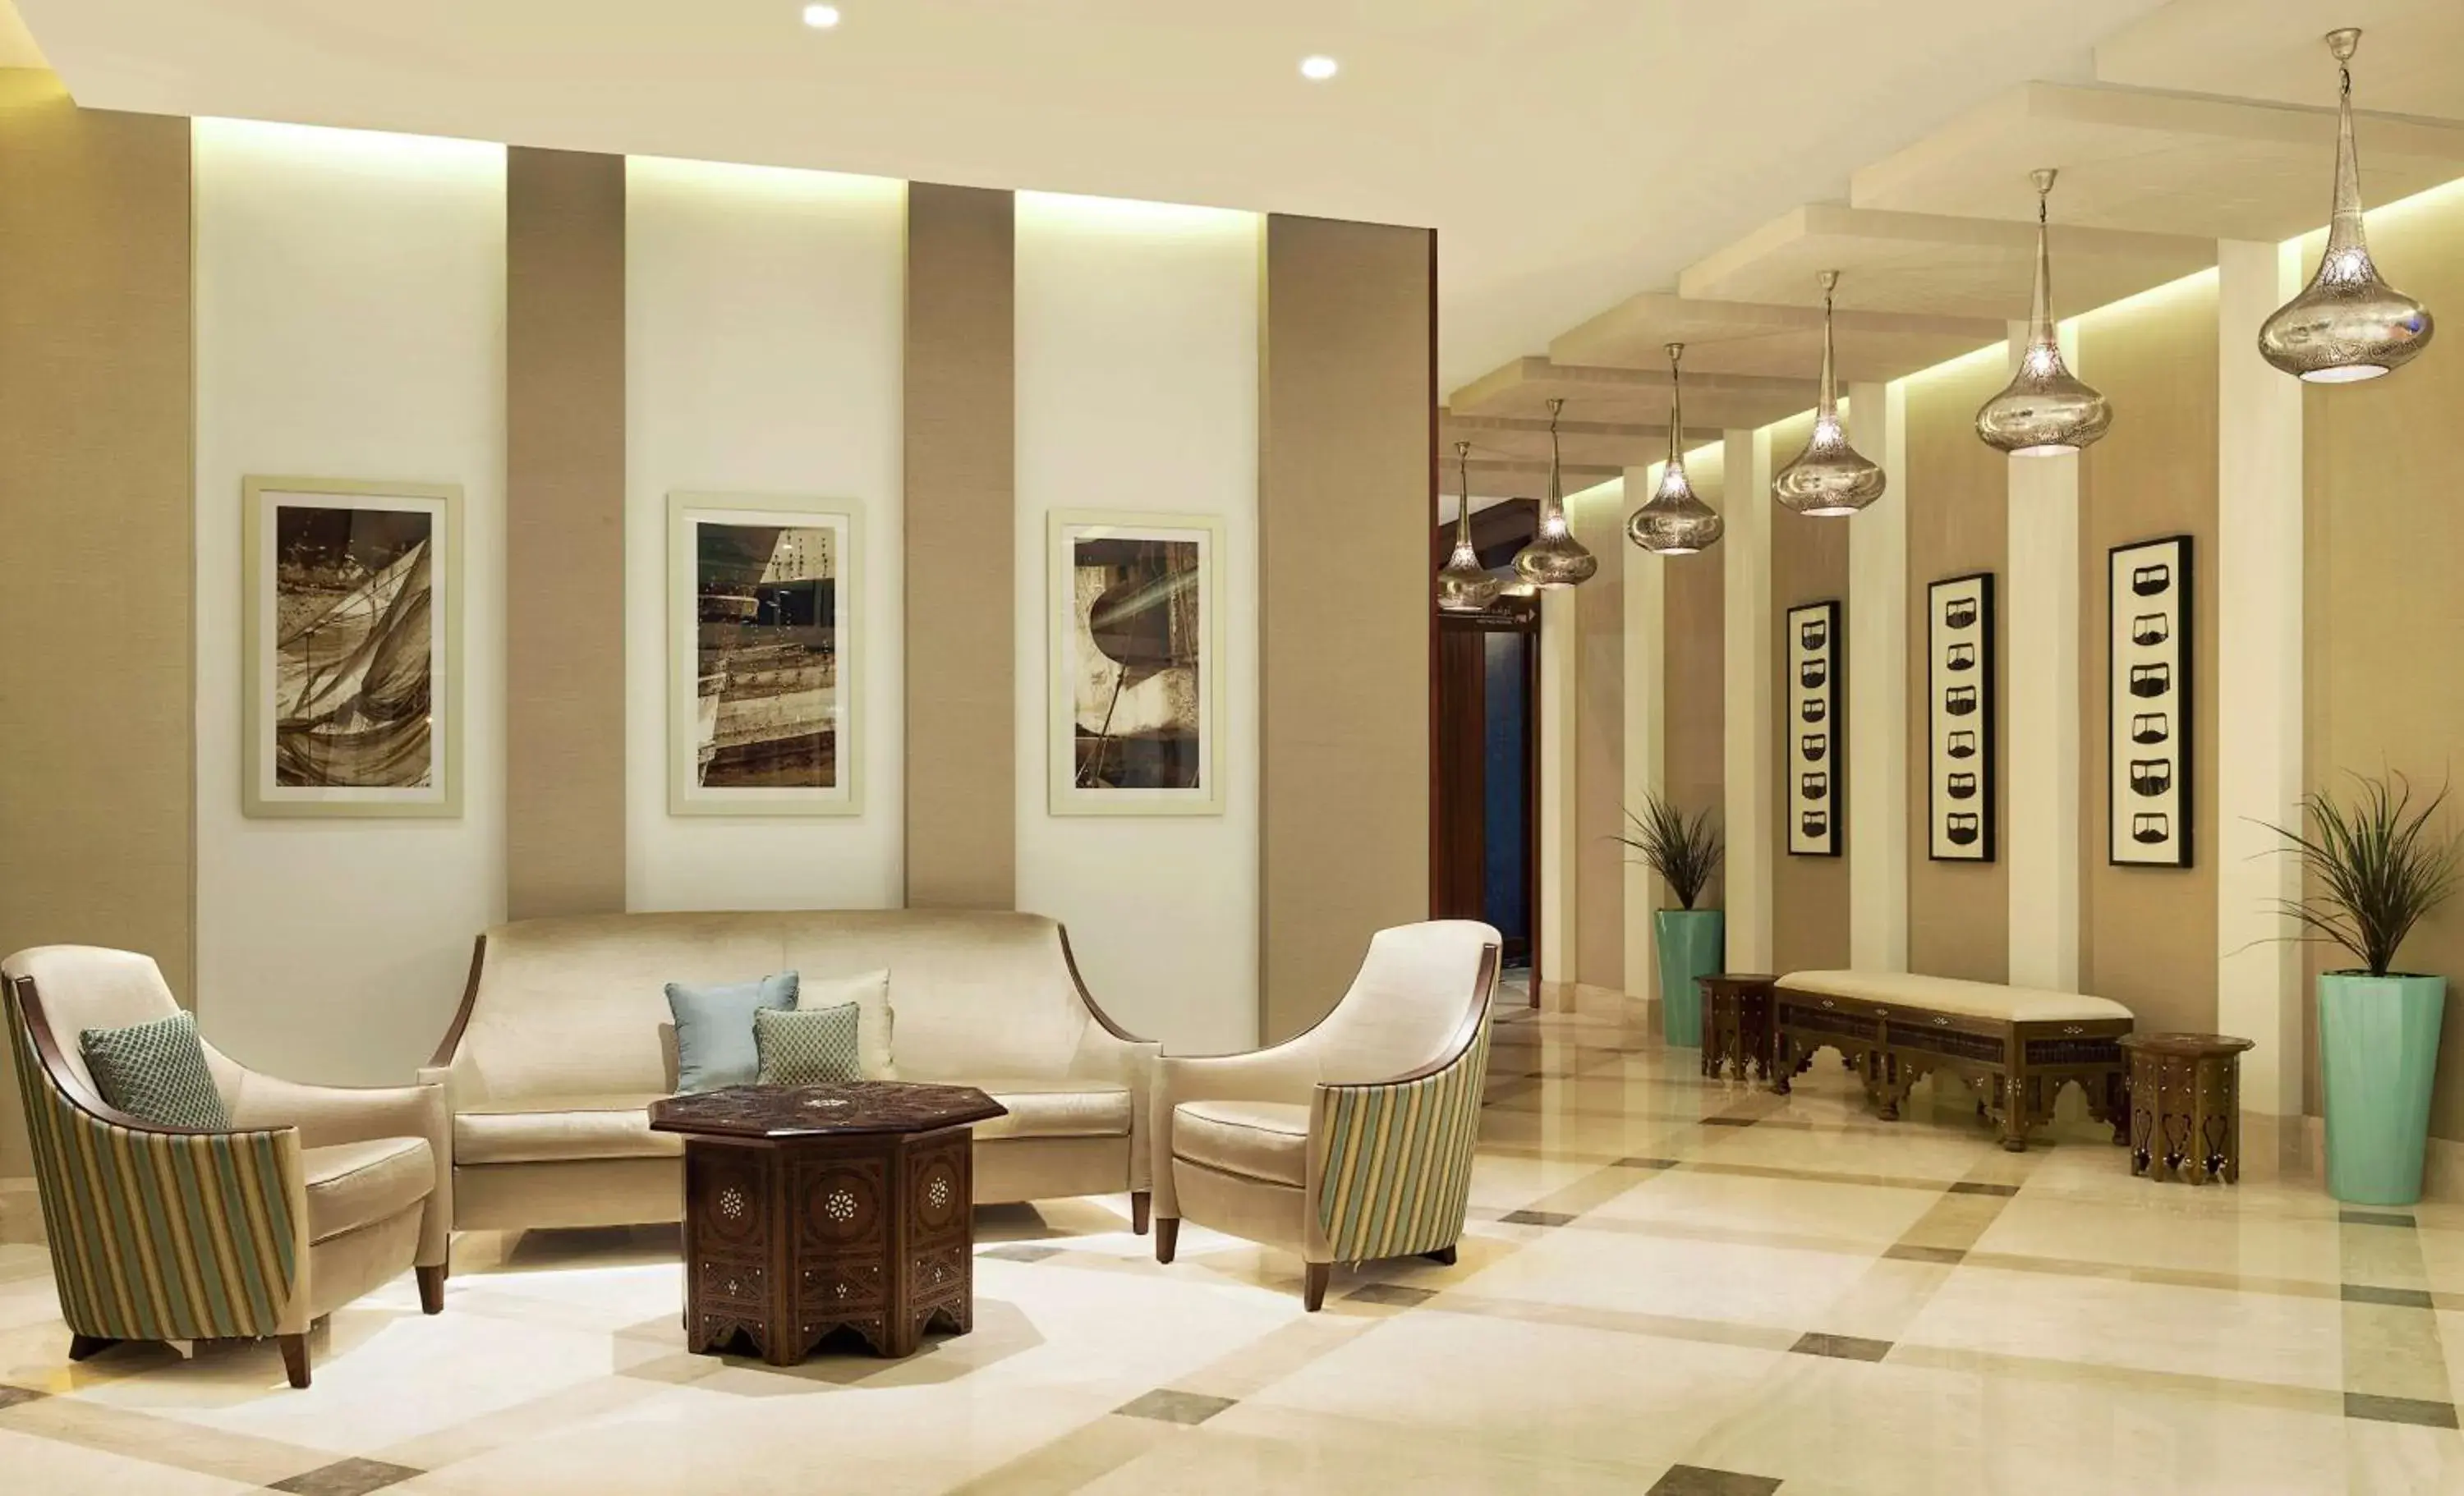 Lobby or reception, Lobby/Reception in Hilton Garden Inn Dubai Al Mina - Jumeirah